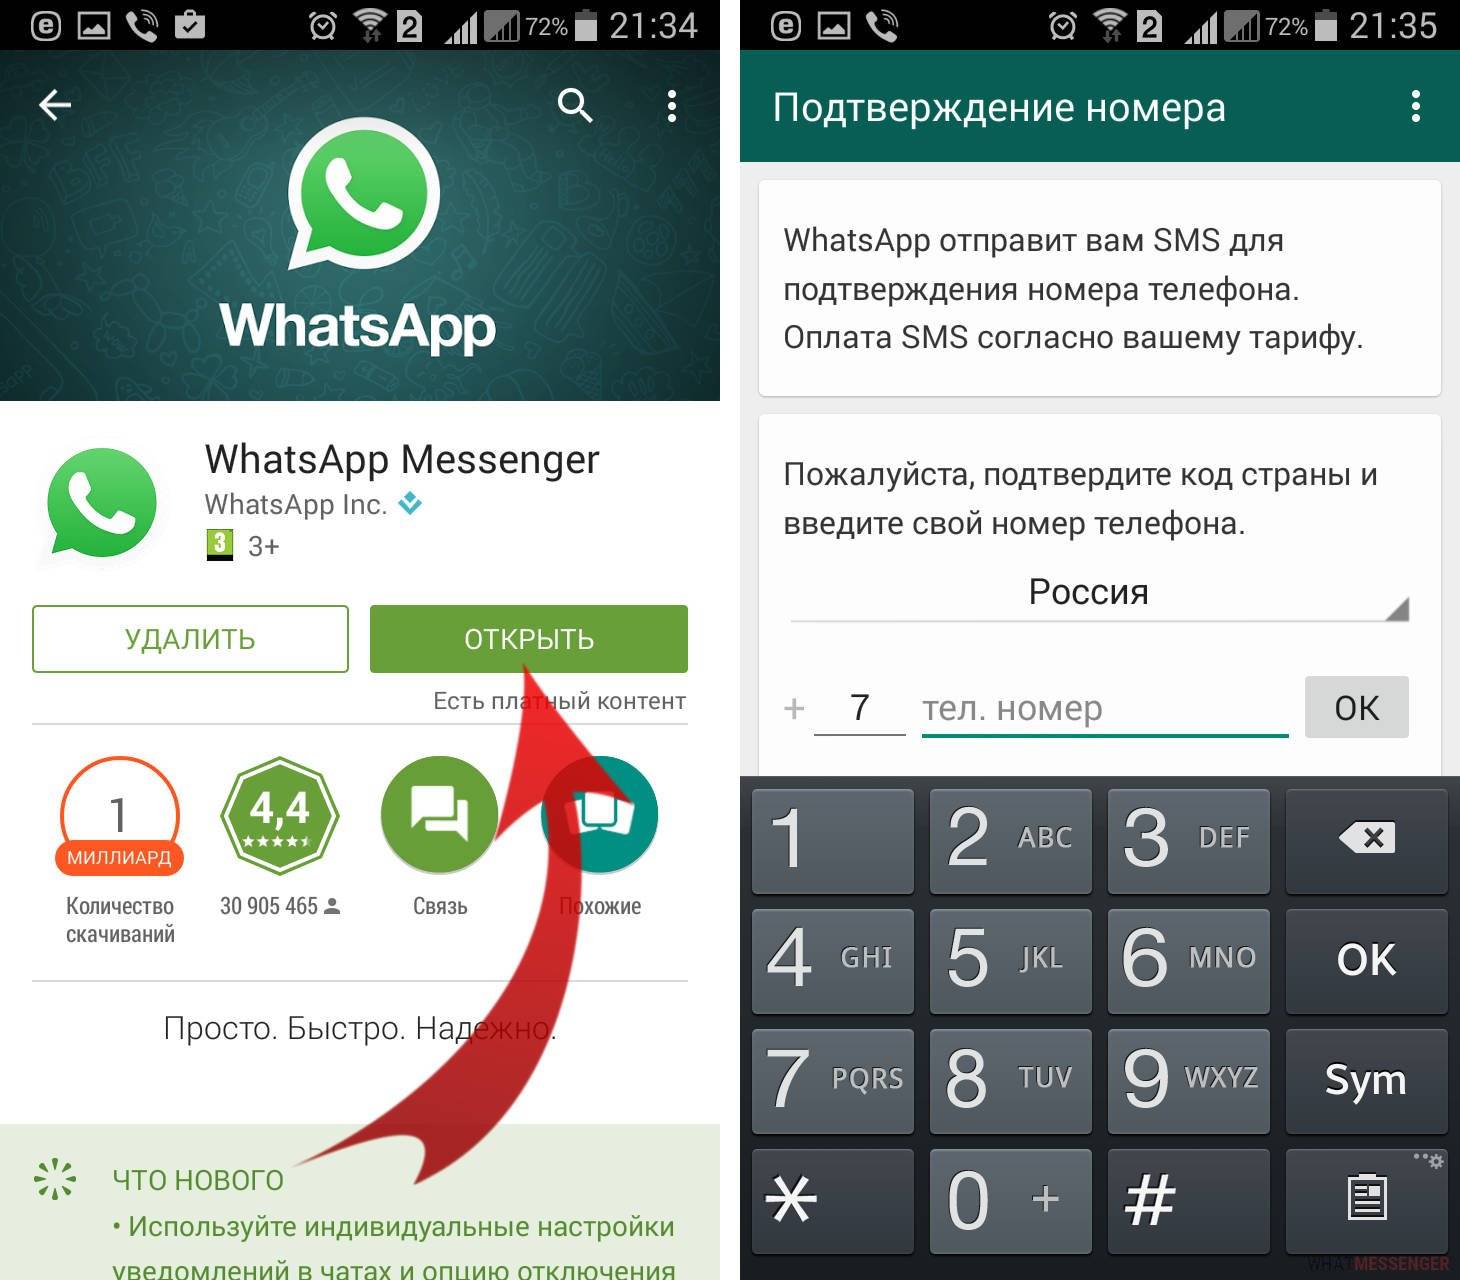 Что такое whatsapp и как им пользоваться | ватсап помощник